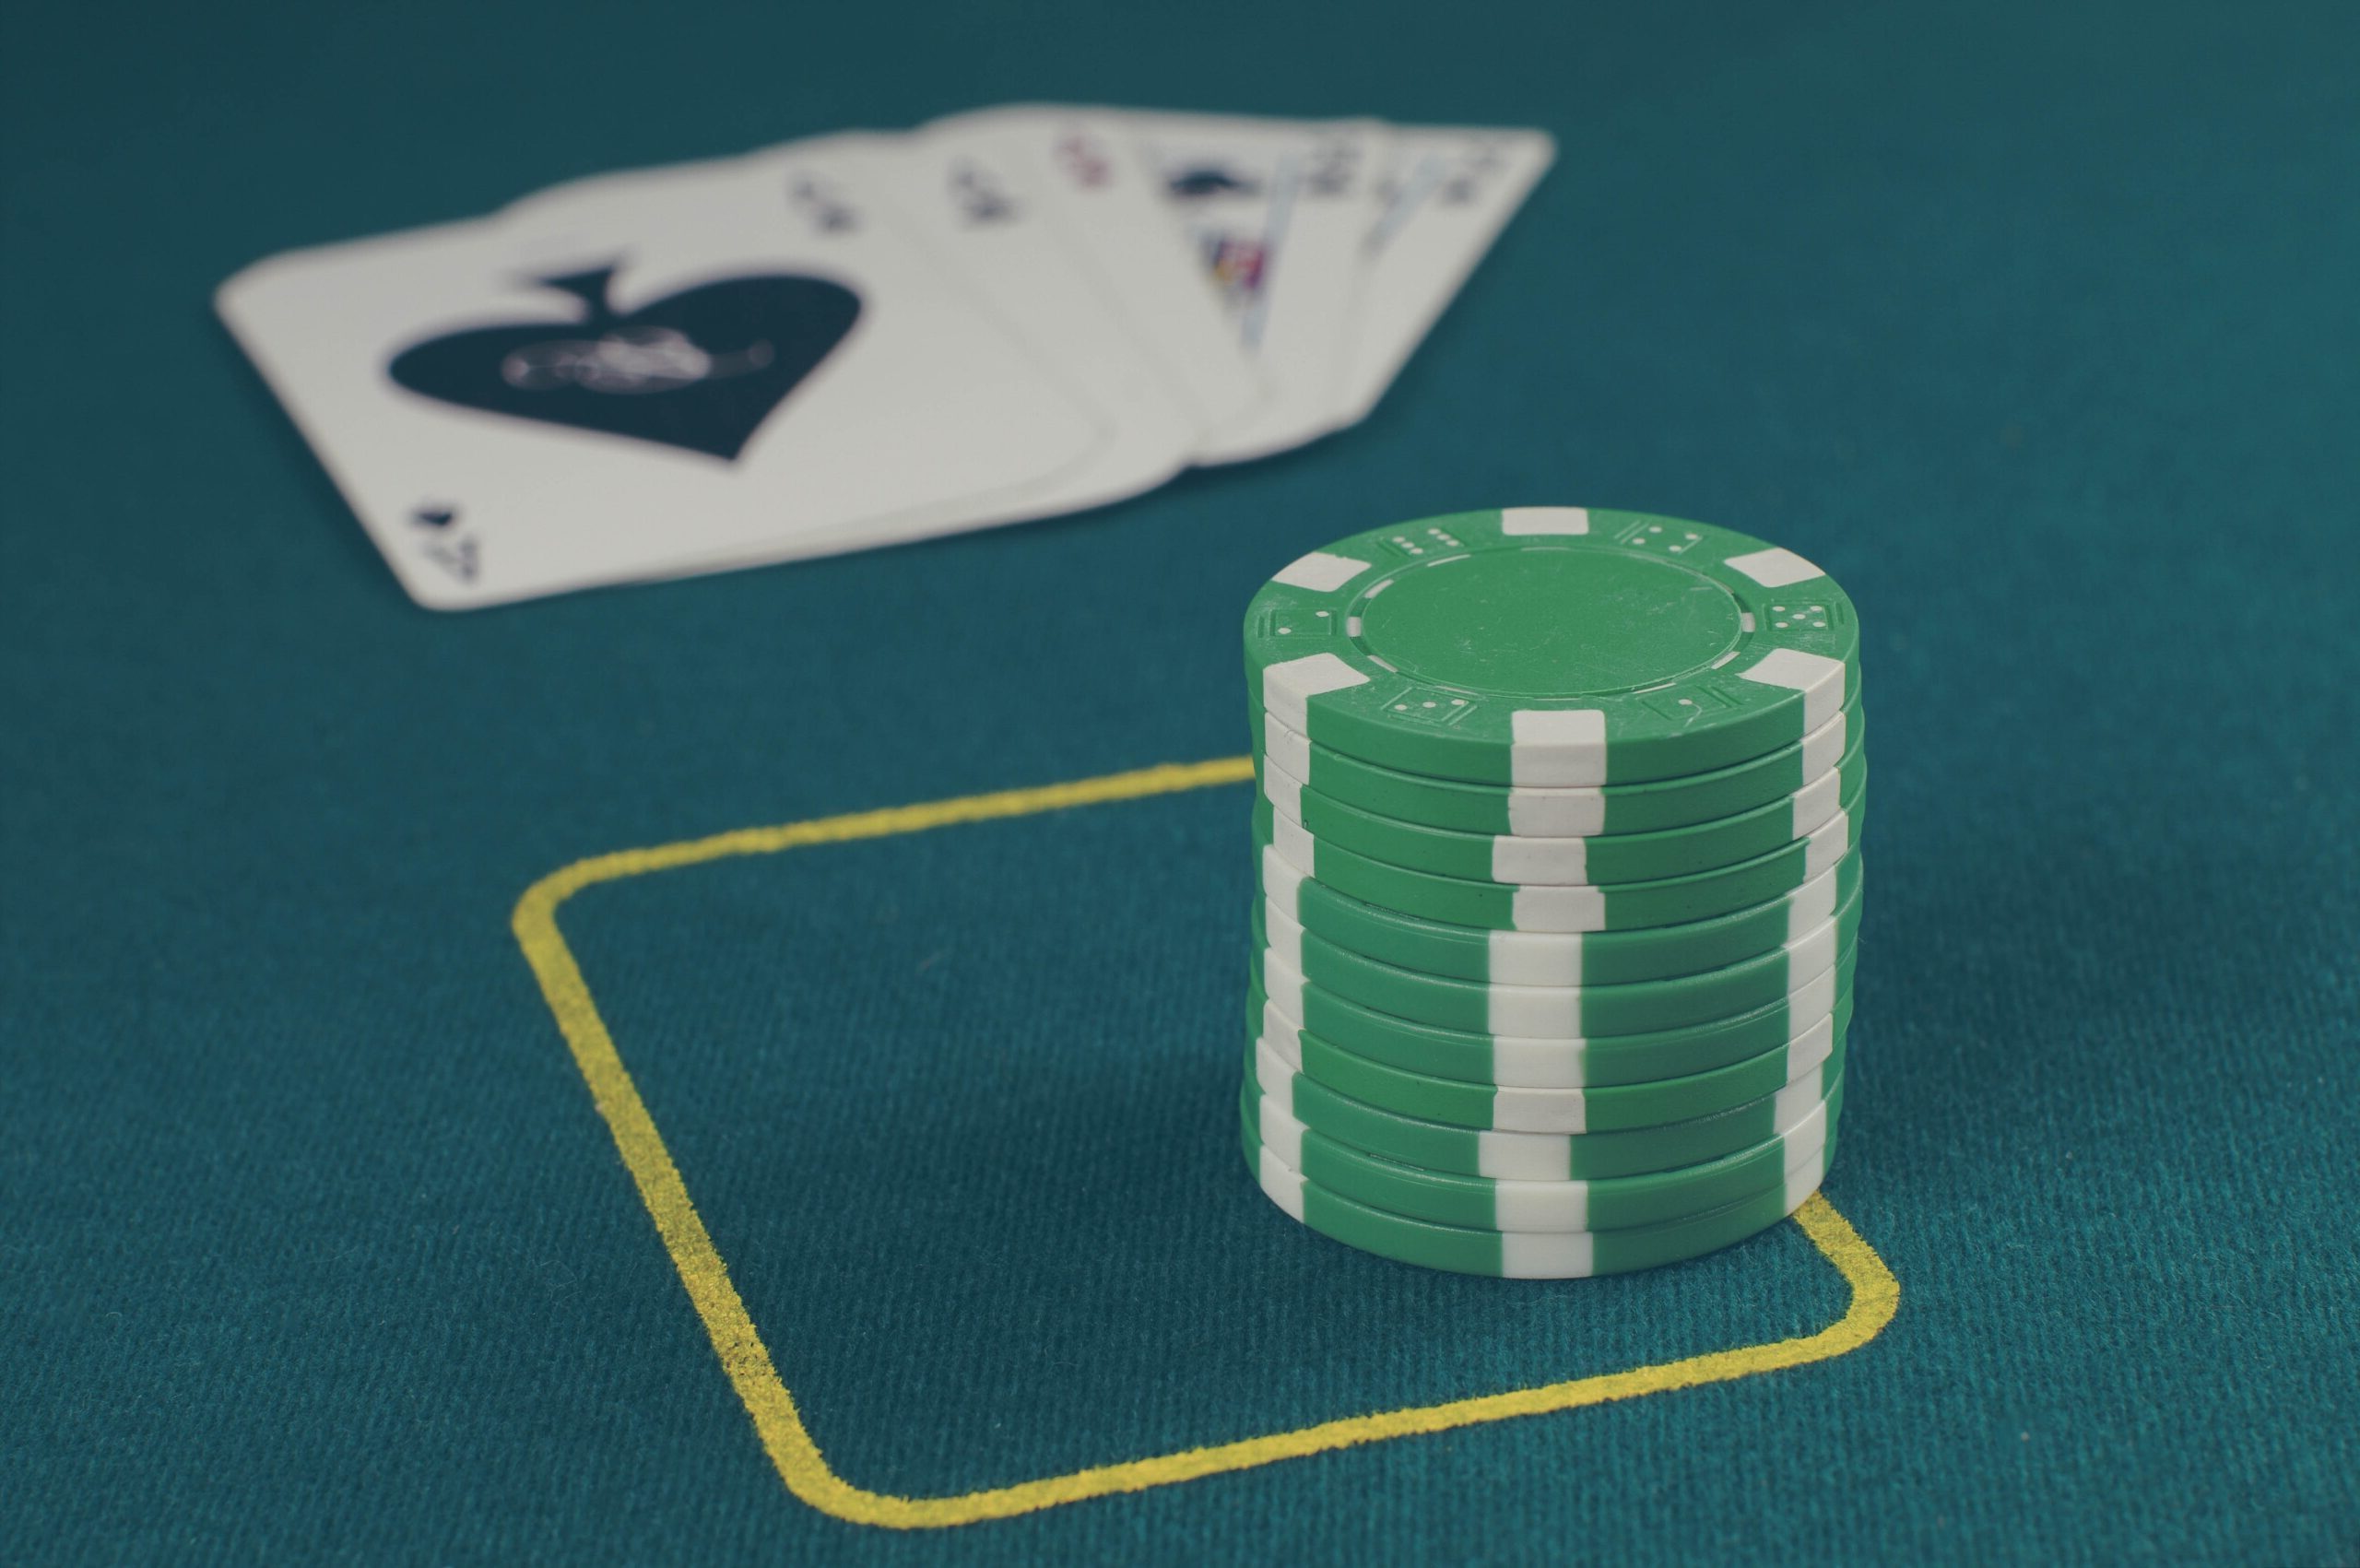 Venha conhecer Crazy Pineapple, uma das modalidades mais malucas do jogo de poker online. Comece a praticar para apostar online na Apostaquente.